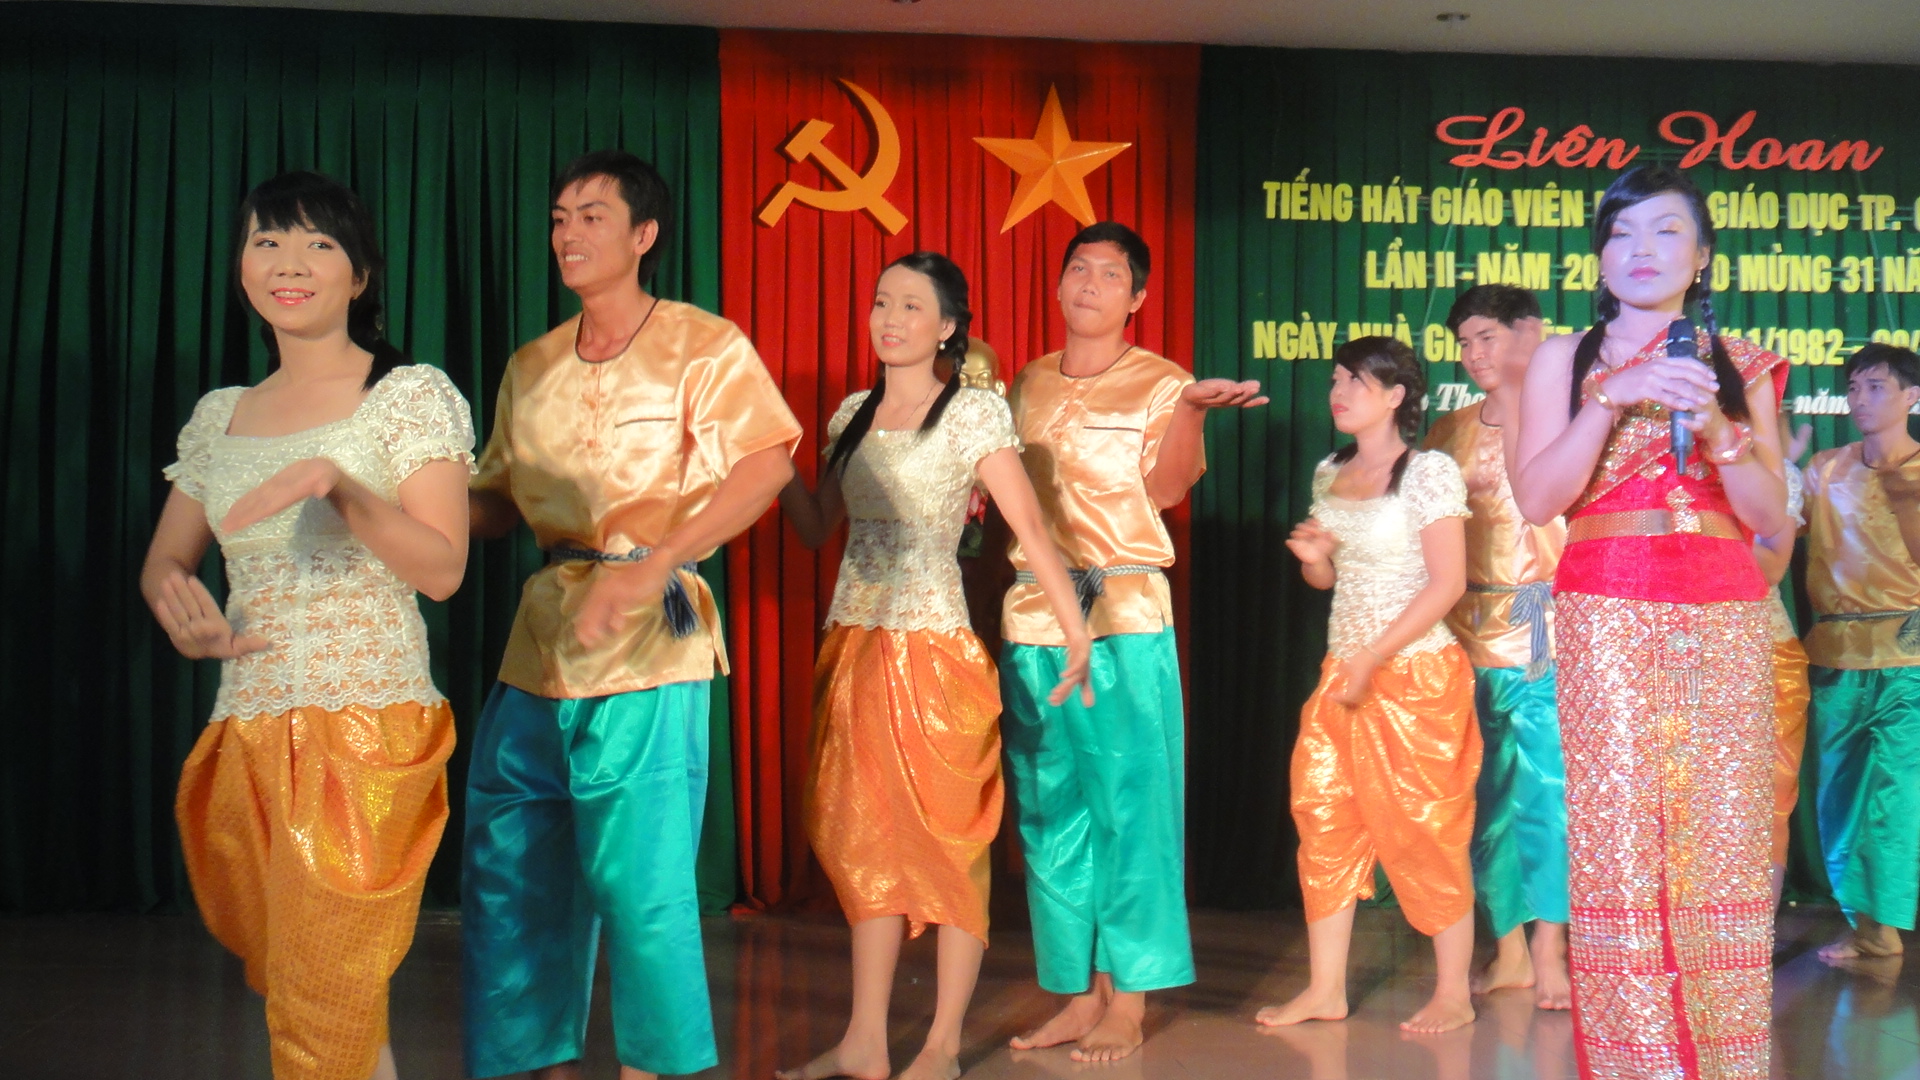 Trường THPT Thới Lai tham dự liên hoan tiếng hát giáo viên thành phố Cần Thơ lần II